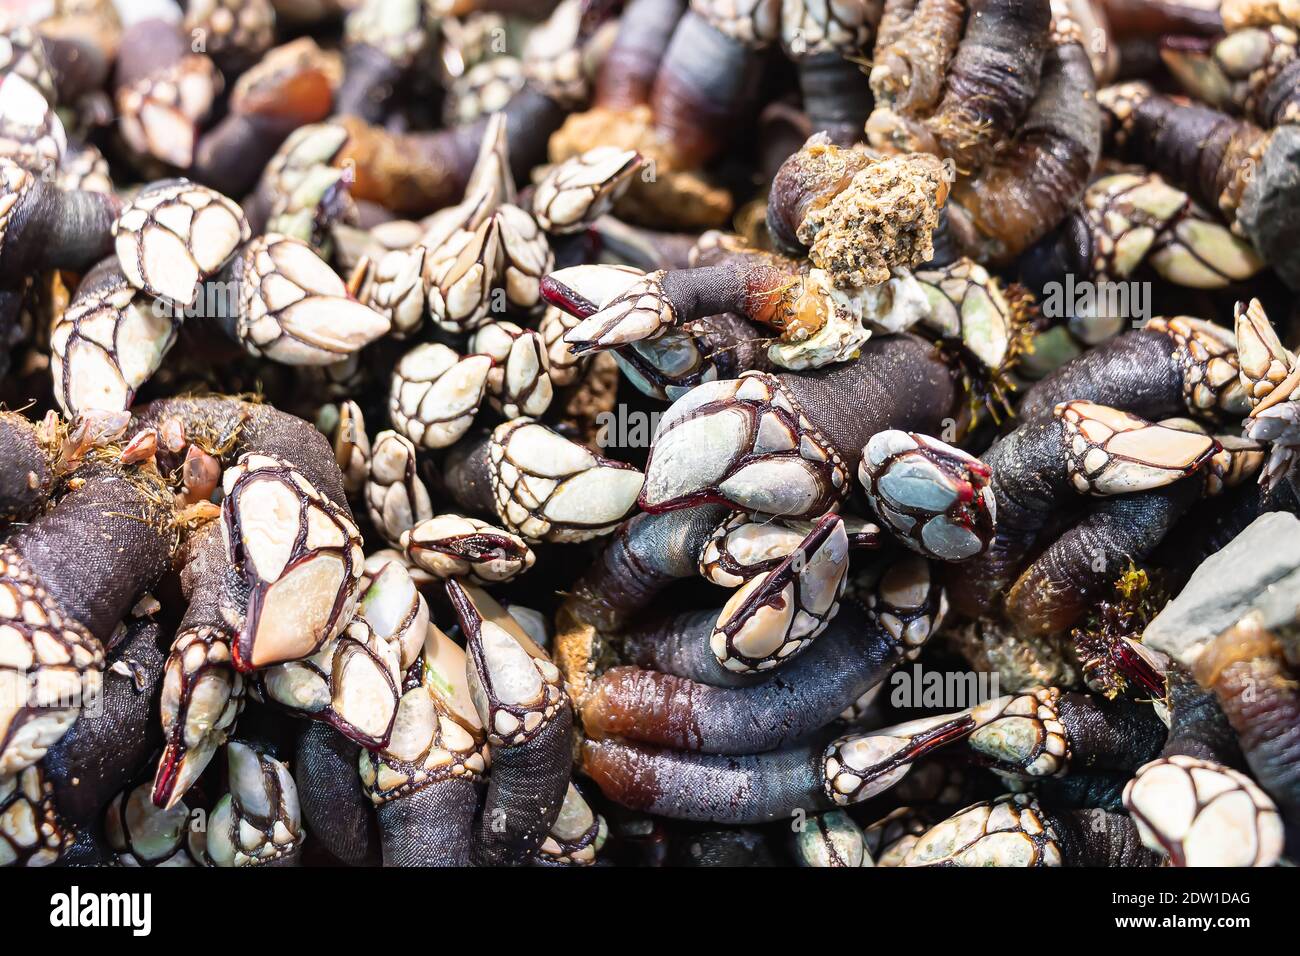 Beaucoup de barnacles fraîches (pedunculata) à vendre sur un marché de poissons à Huelva, en Espagne Banque D'Images